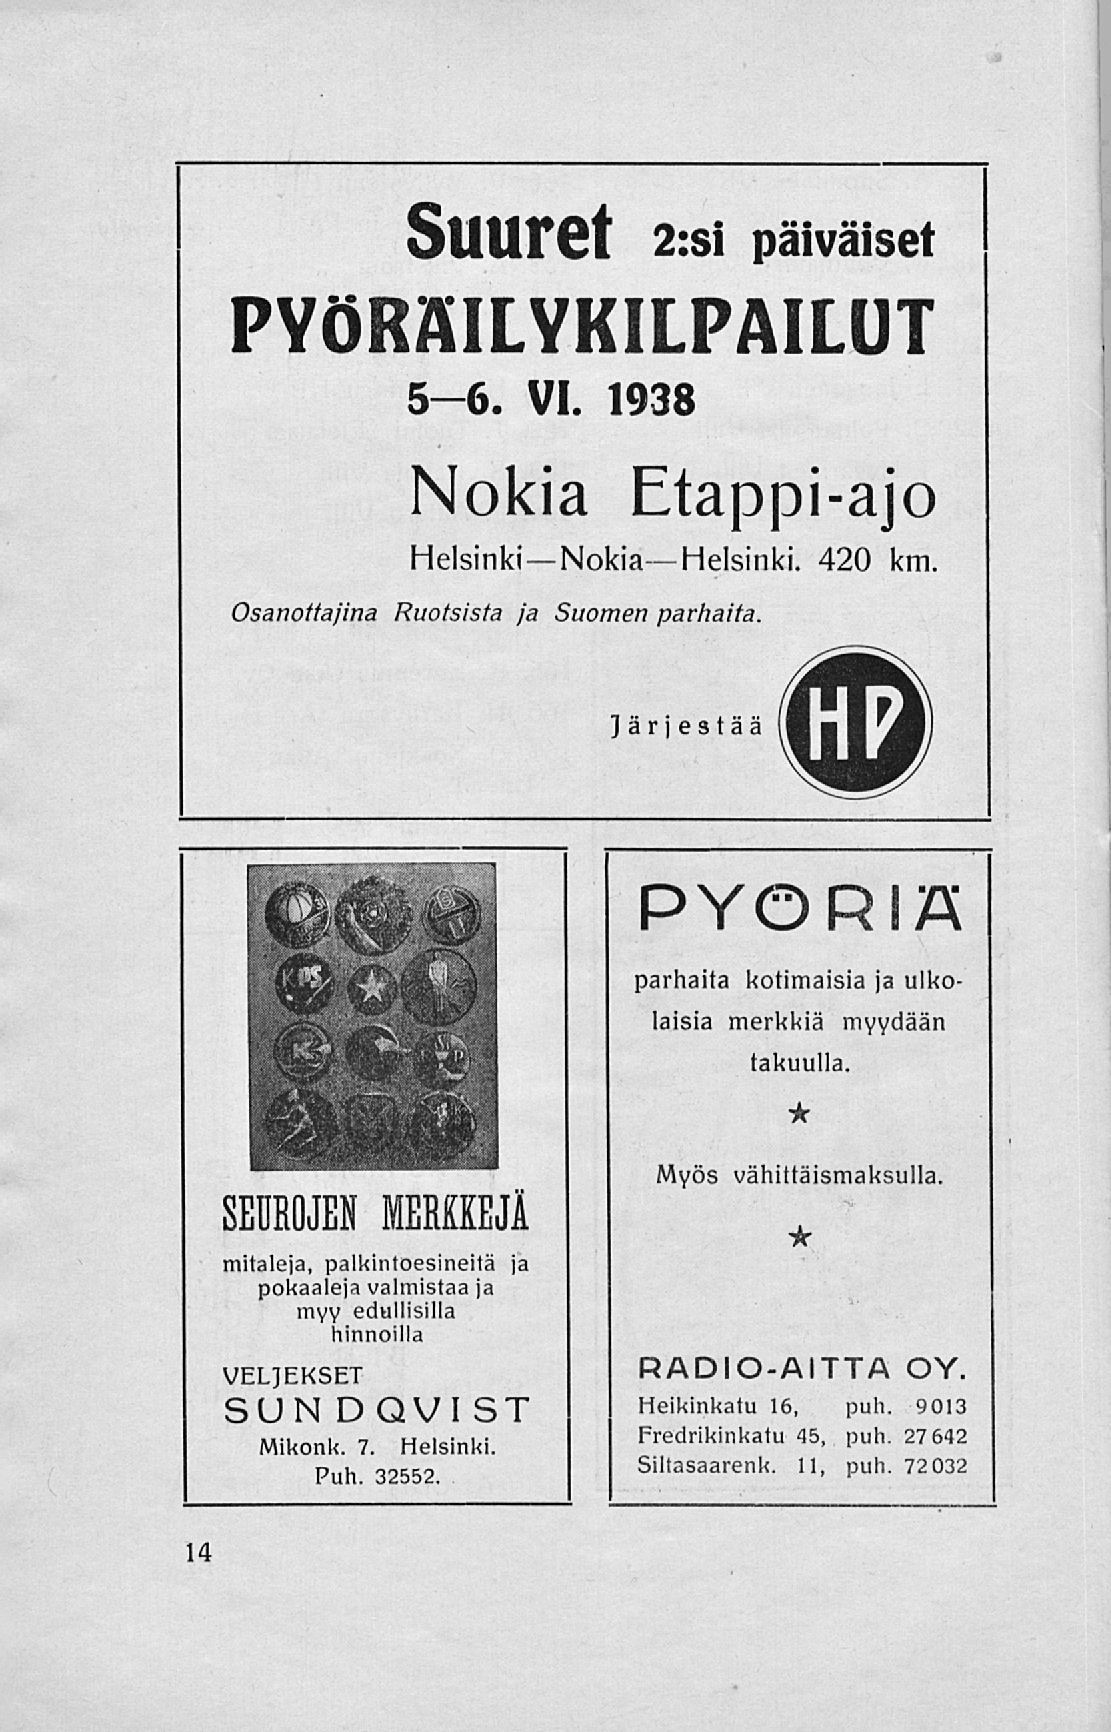 StlUret 2:si päiväiset PYÖRÄILYKILPAILUT 5-6. VI. 1938 Nokia Etappi-ajo Helsinki Nokia Helsinki. 420 km. Osanottajina Ruotsista ja Suomen parhaita.